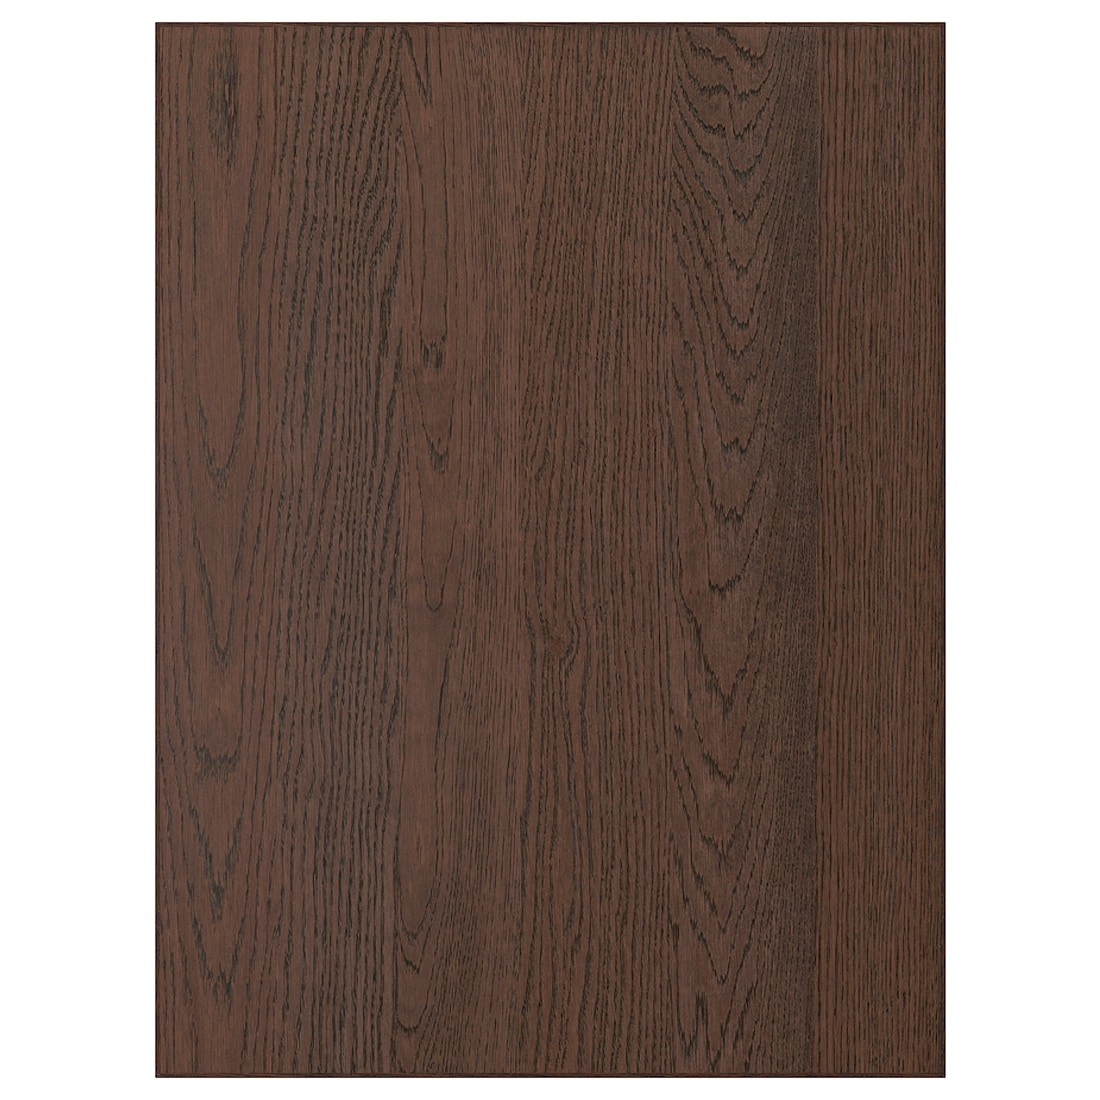 SINARP СІНАРП Двері, коричневий, 60x80 см